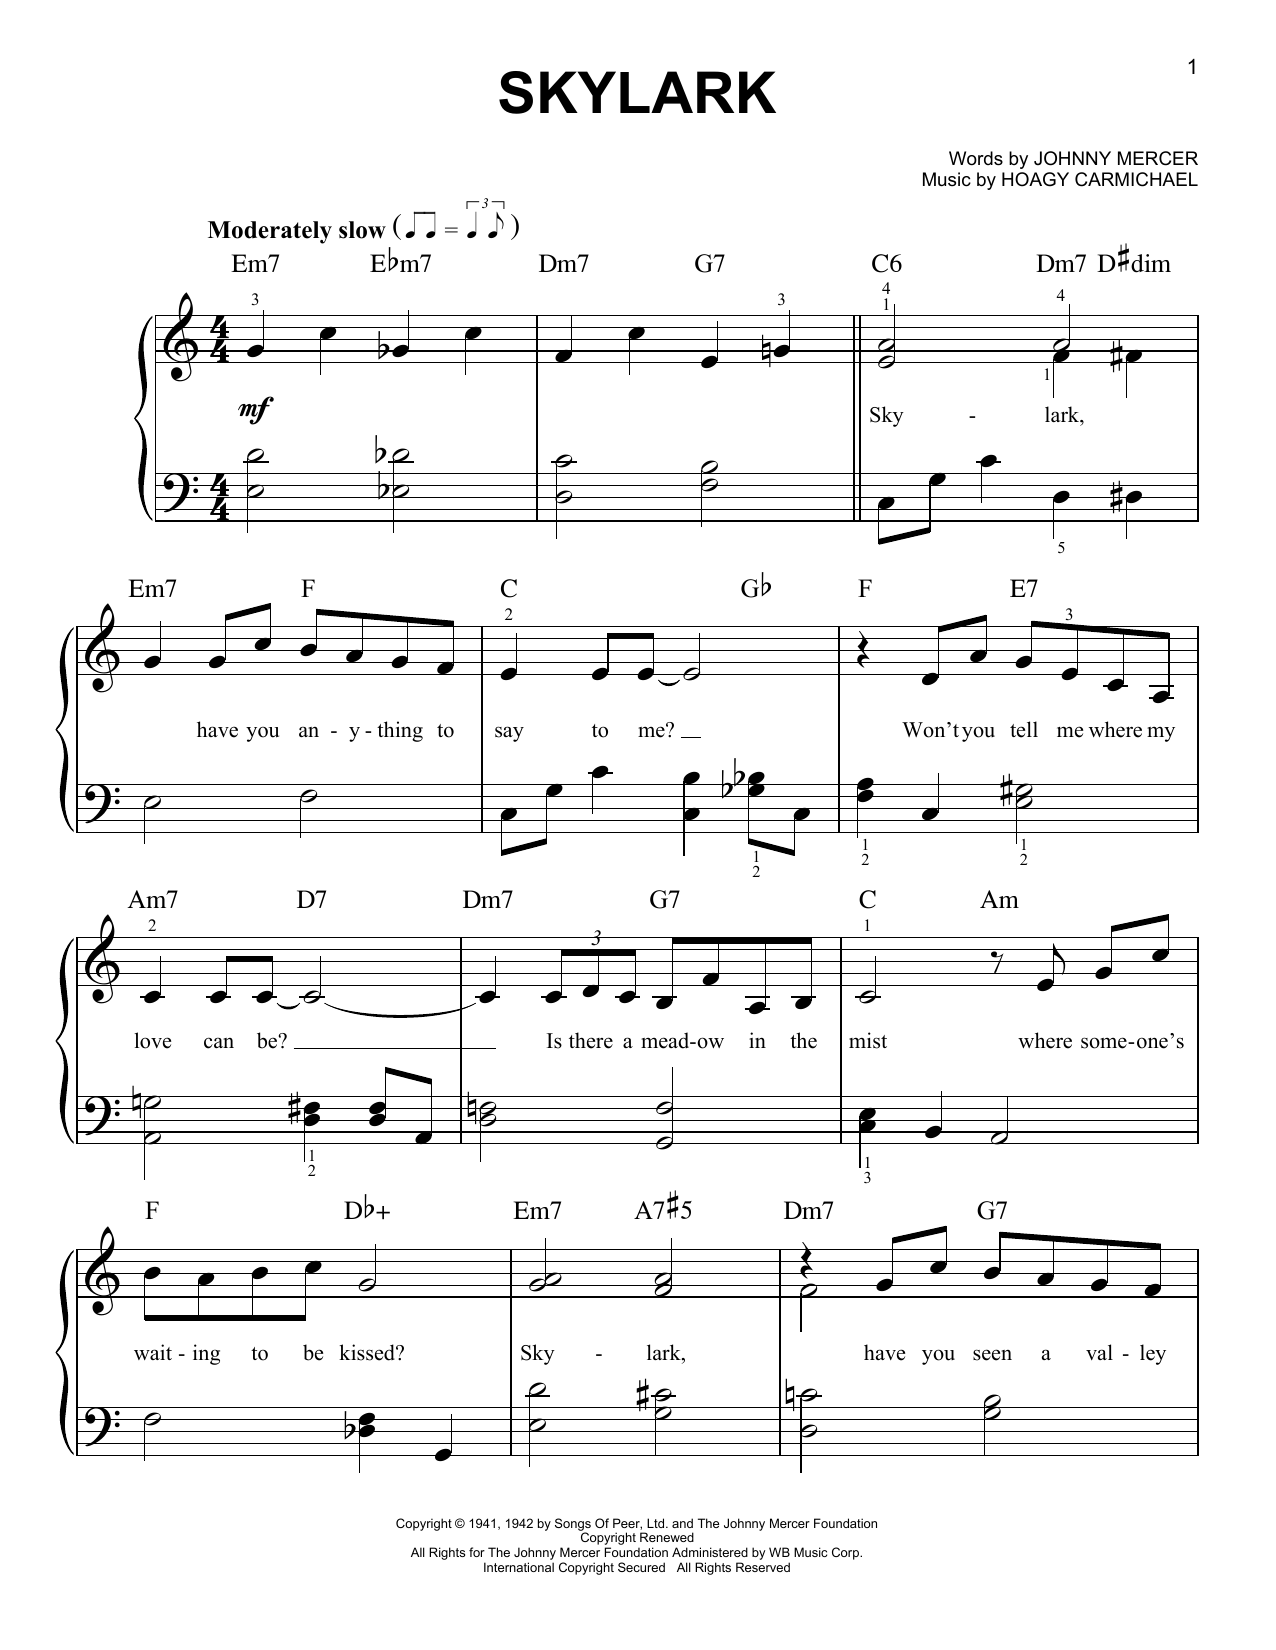 Johnny Mercer Skylark Sheet Music Notes & Chords for Ukulele with strumming patterns - Download or Print PDF